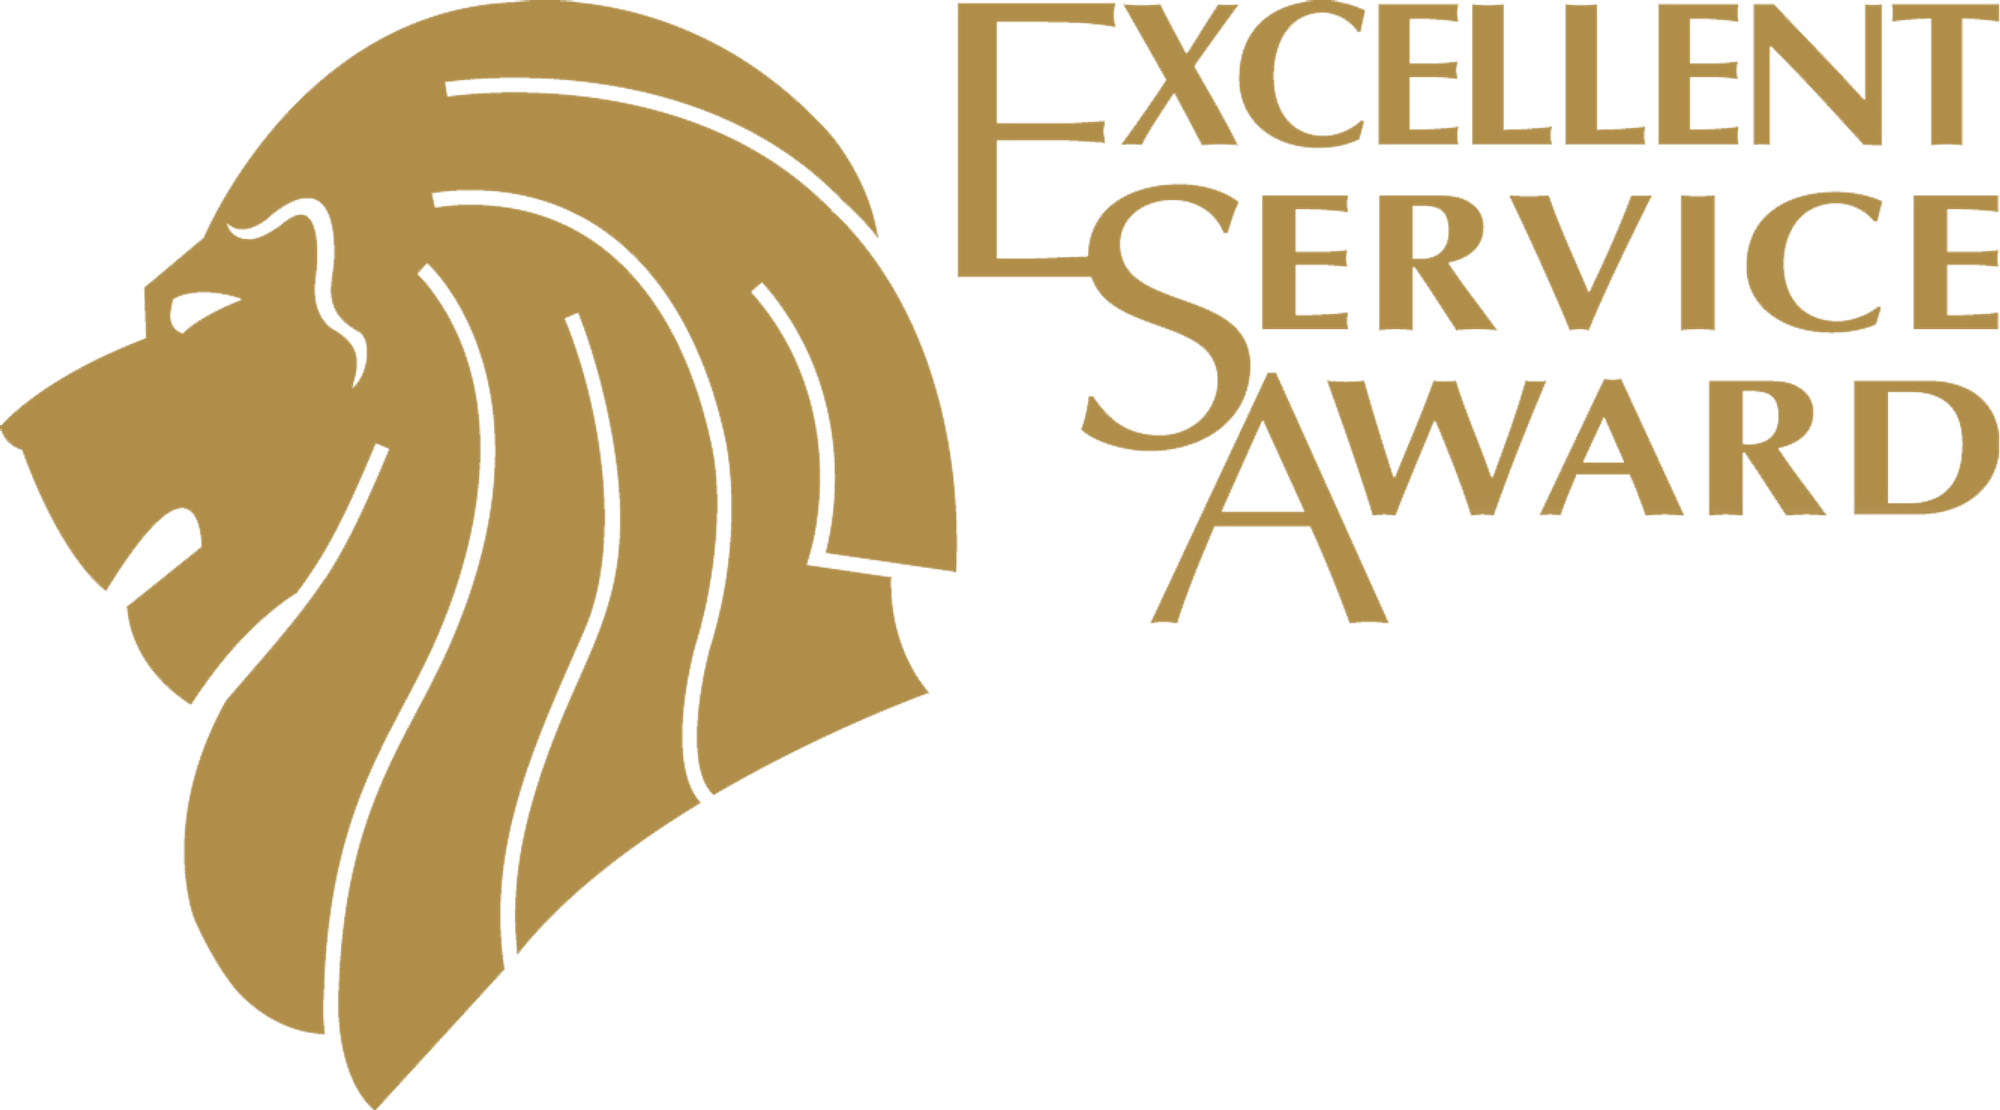 Excellence Service Award